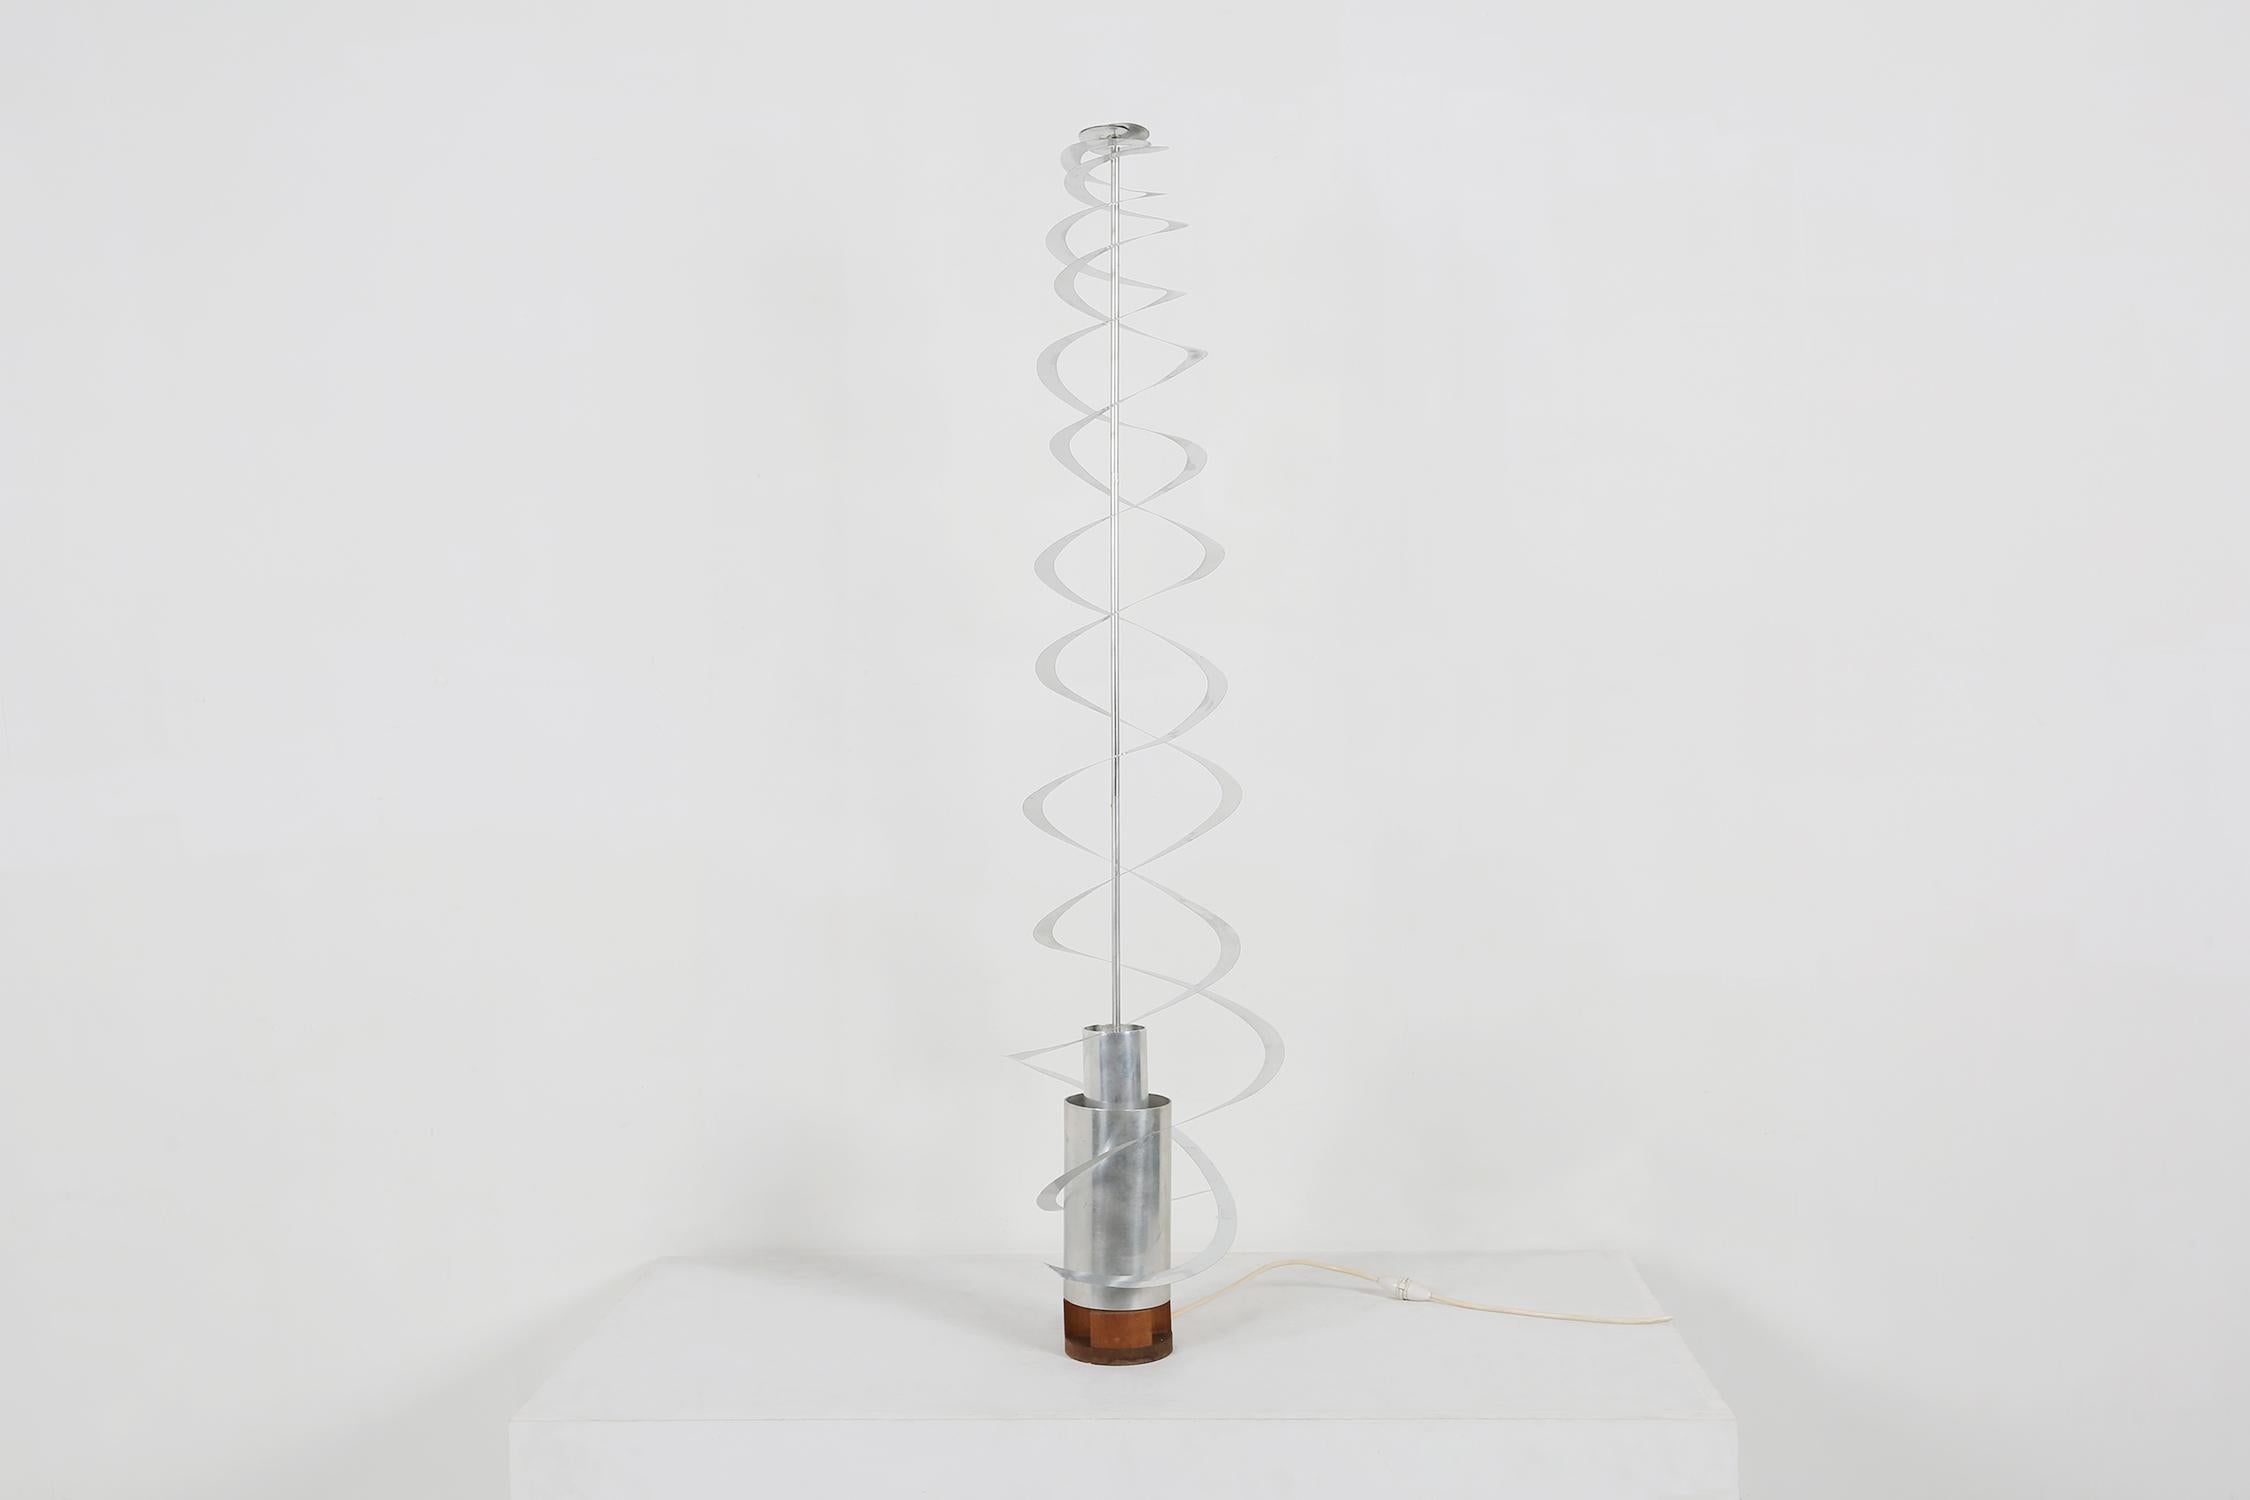 Rare lampe d'avant-garde conçue par le designer français Werner Epstein pour Inter Neo.
La lampe a été exposée au 